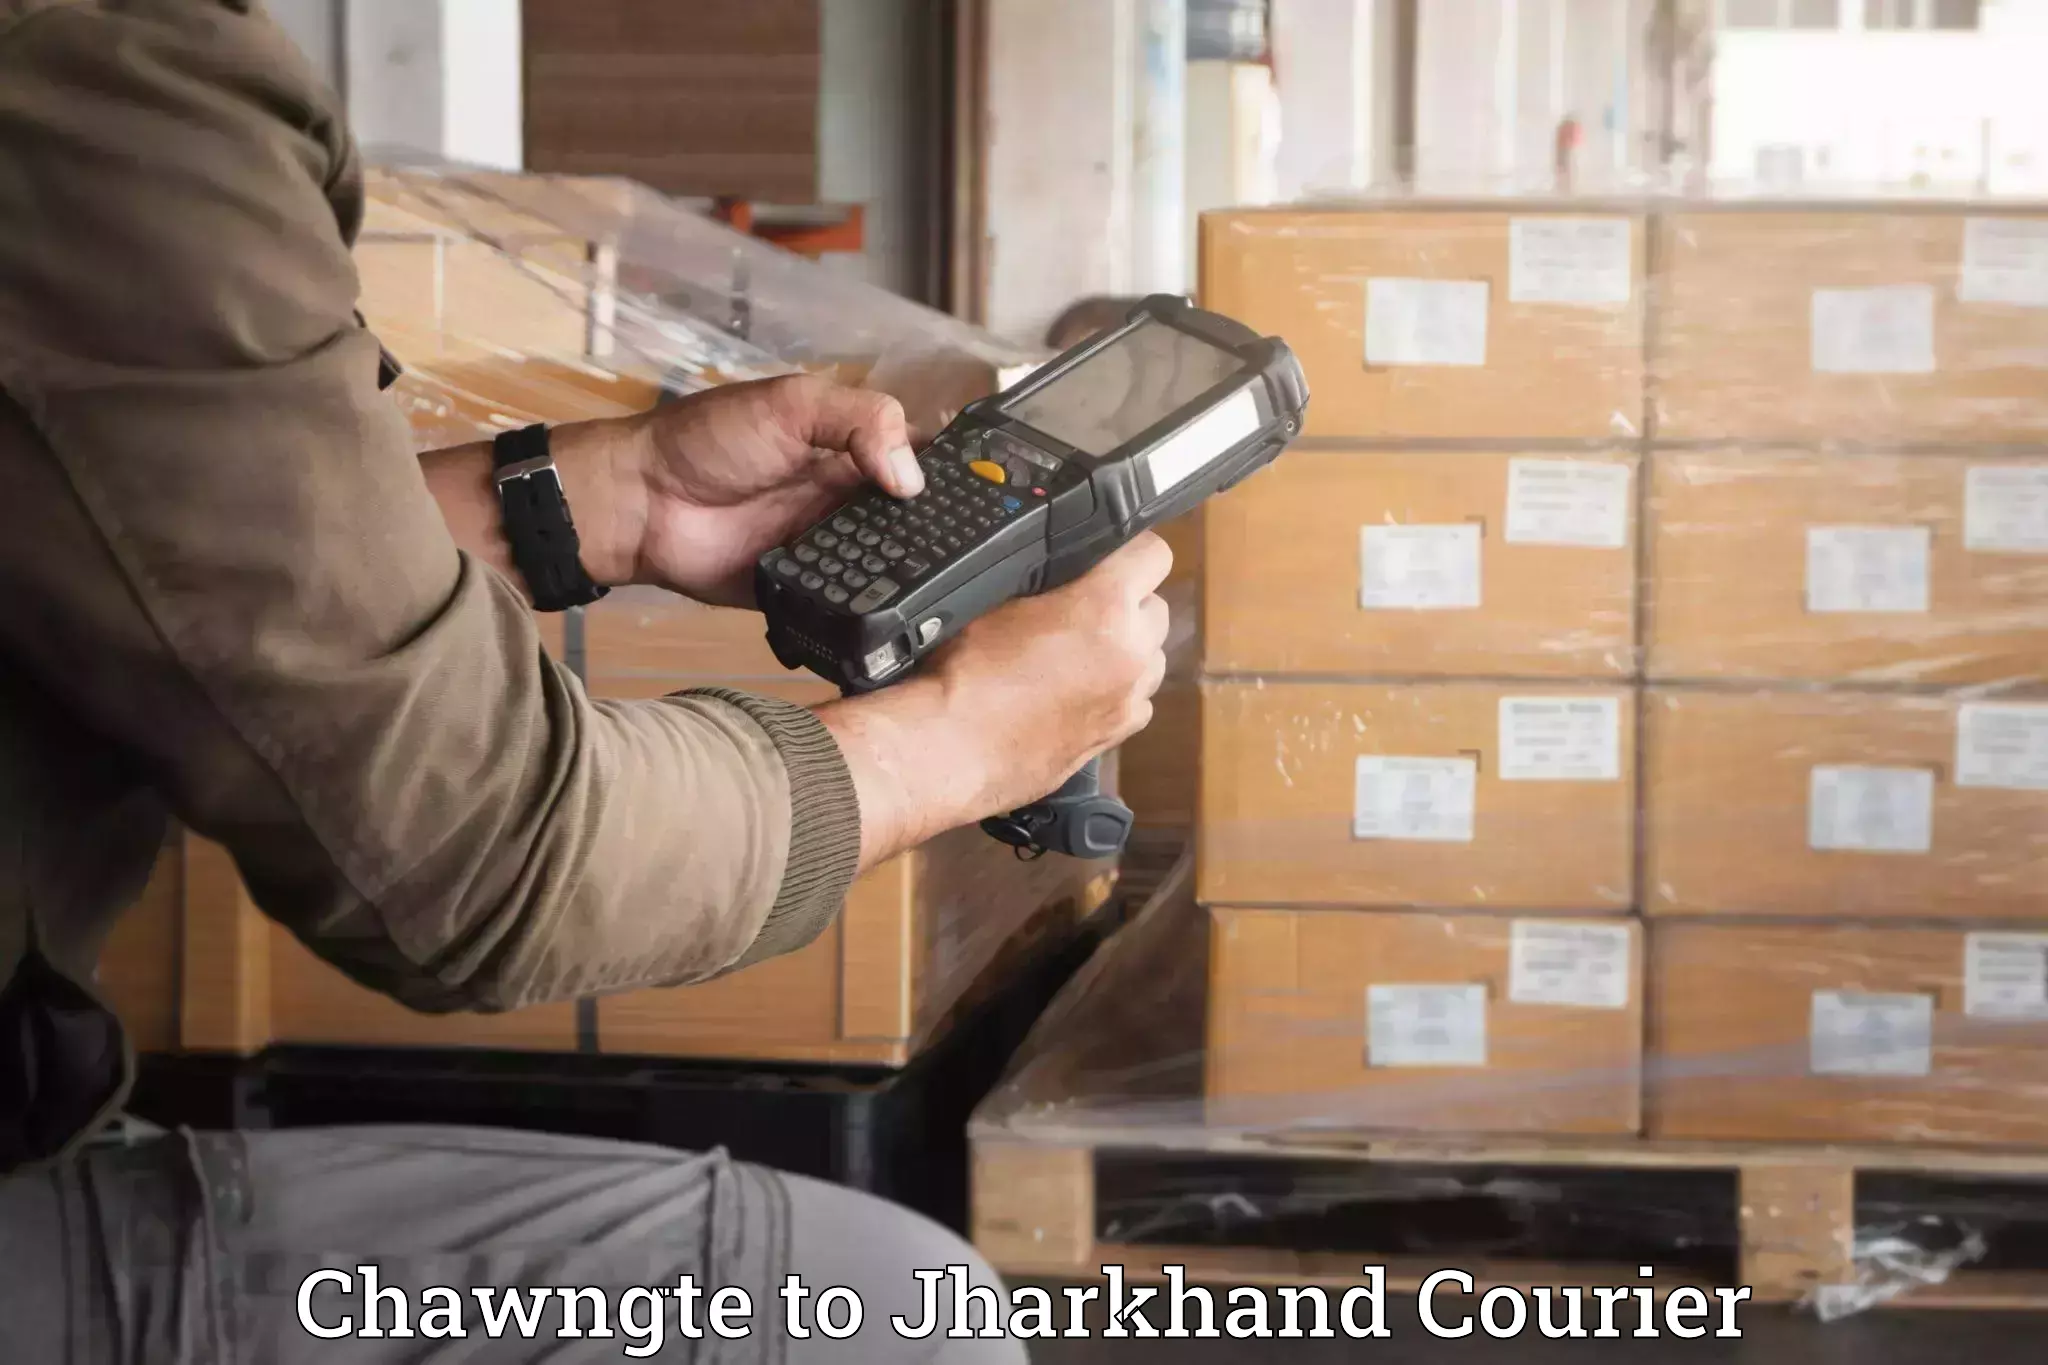 Personalized moving and storage Chawngte to Chhatarpur Palamu